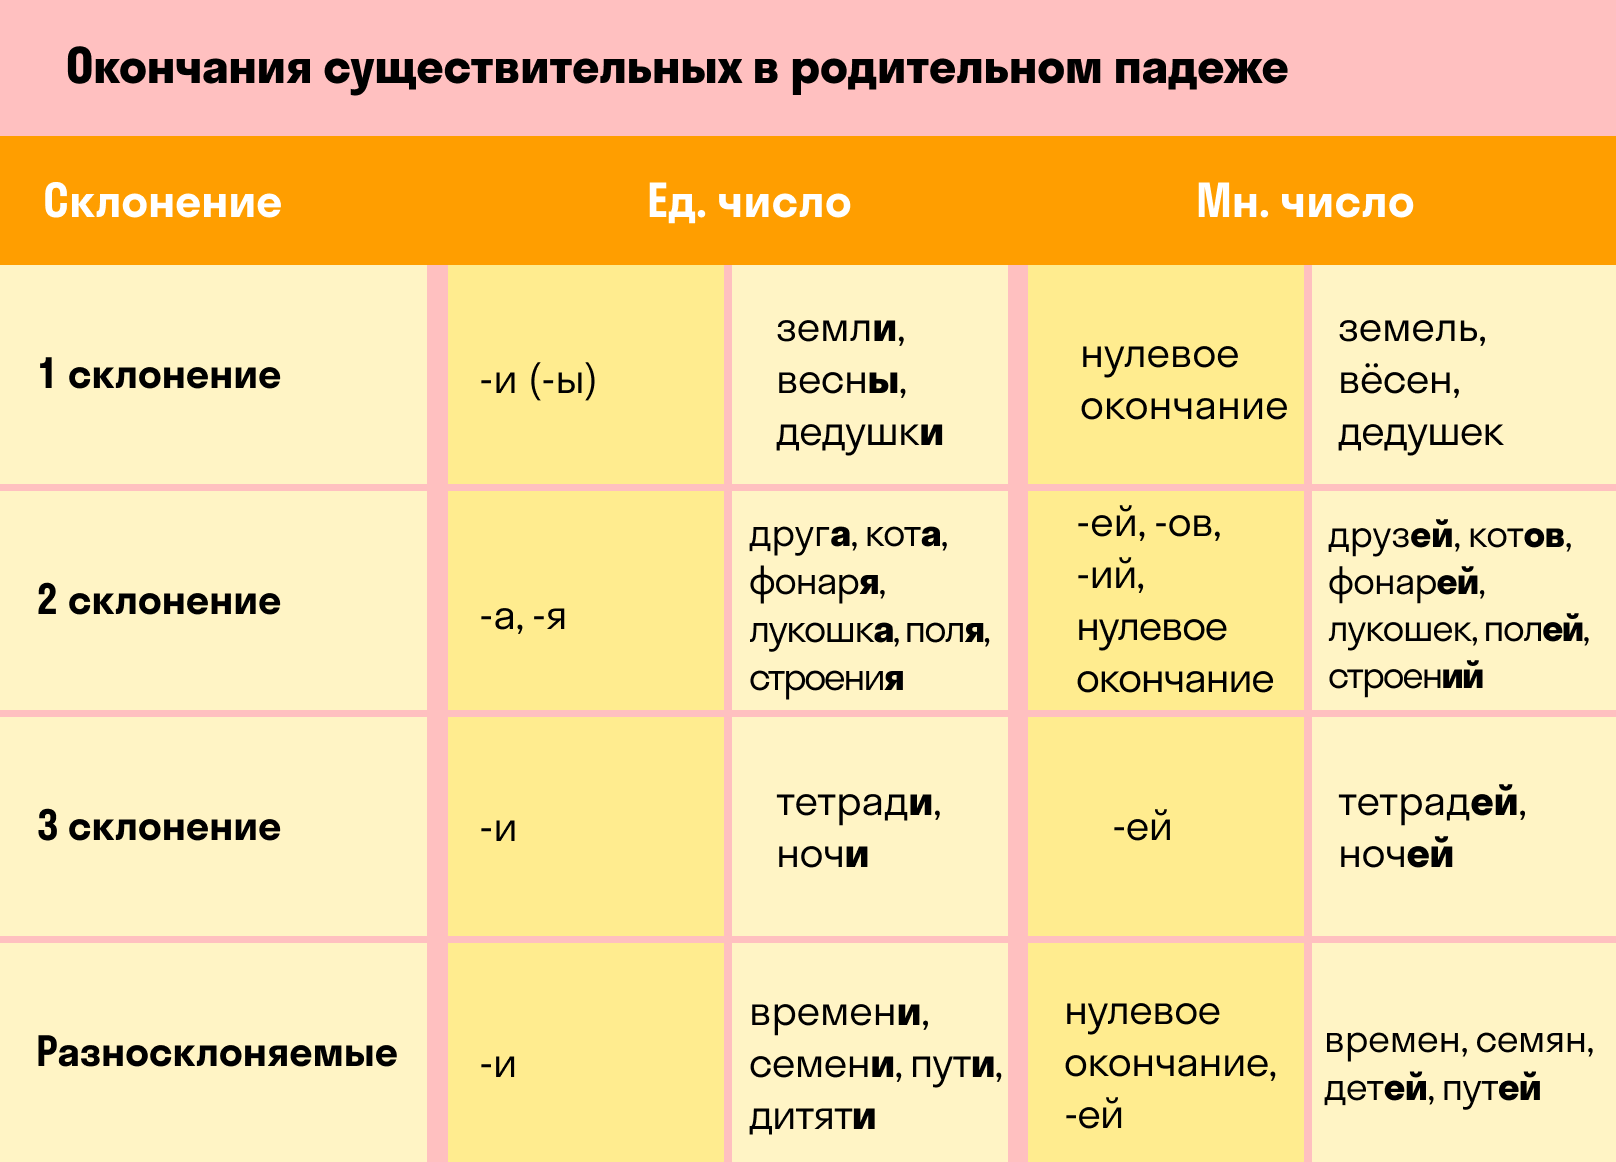 Русский язык количество падежей